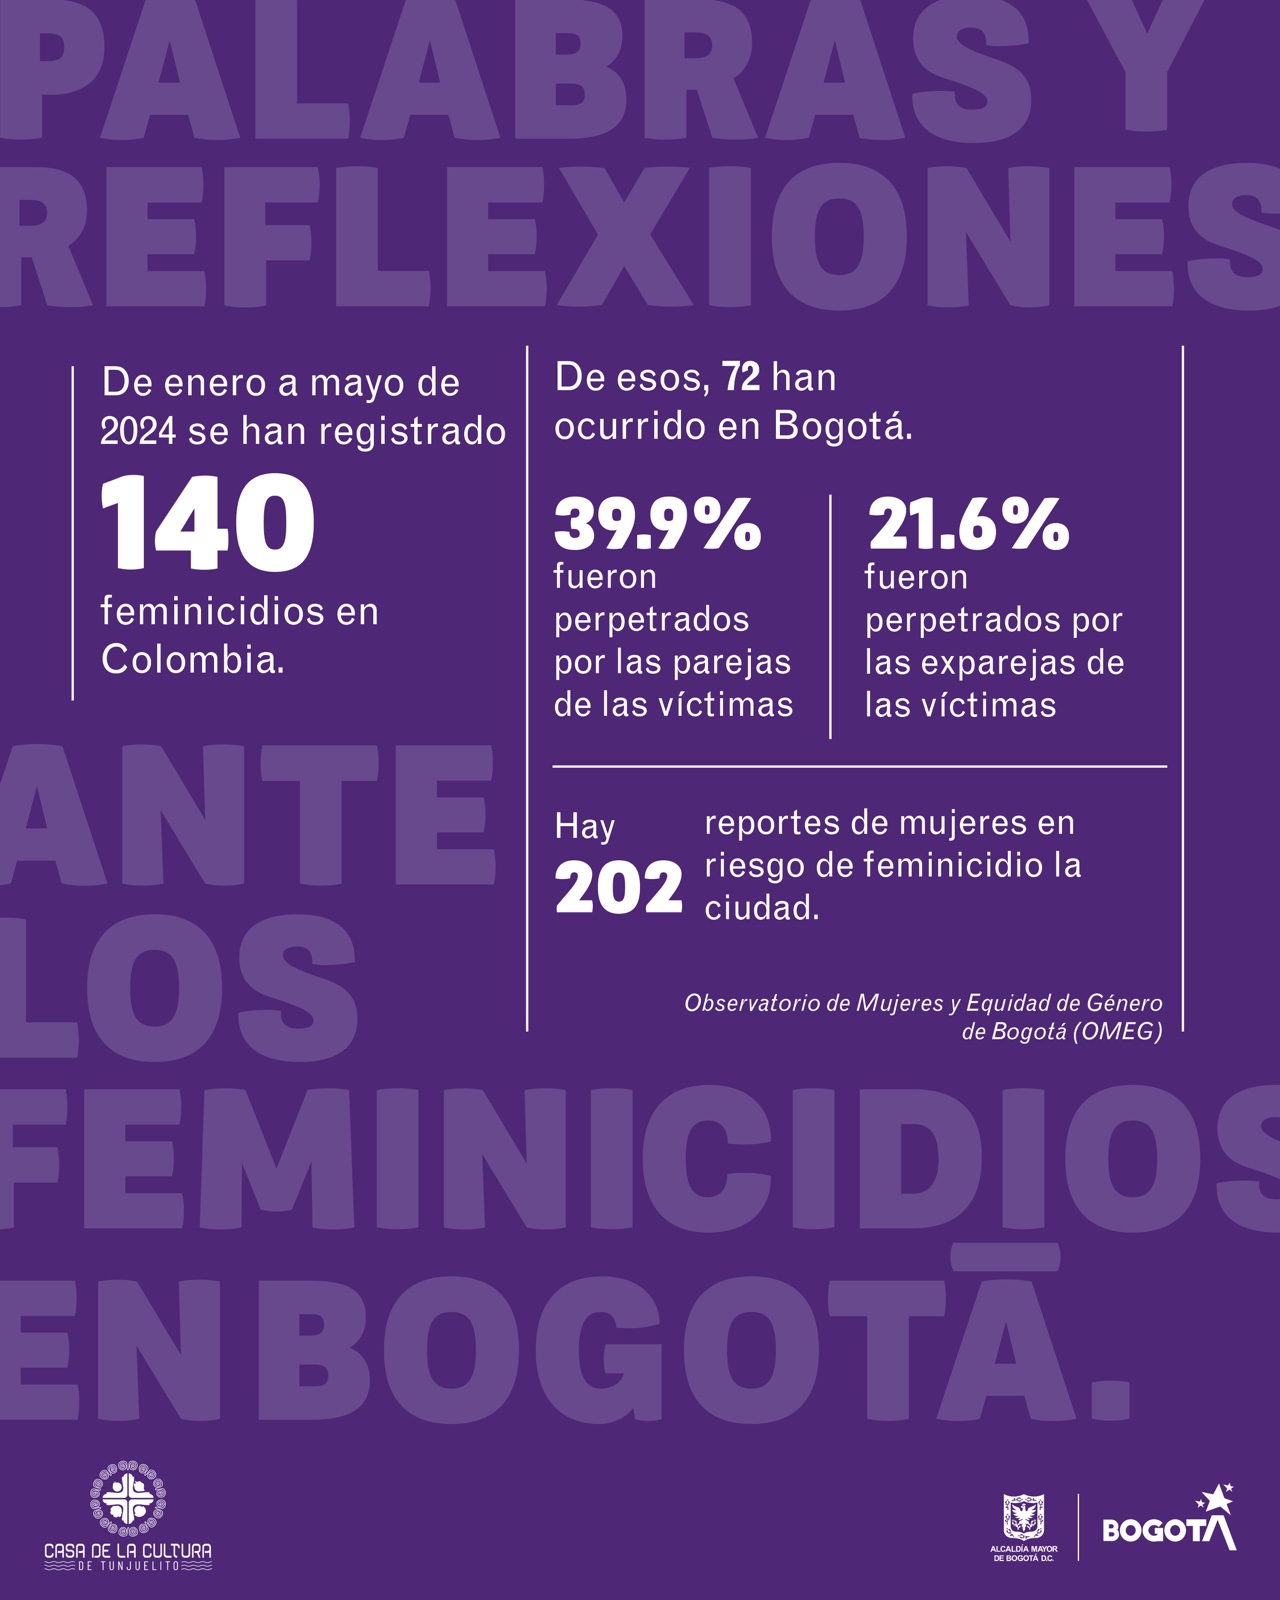  Vivas nos queremos, vivas nos leemos - Palabras y reflexiones ante los feminicidios en Bogotá